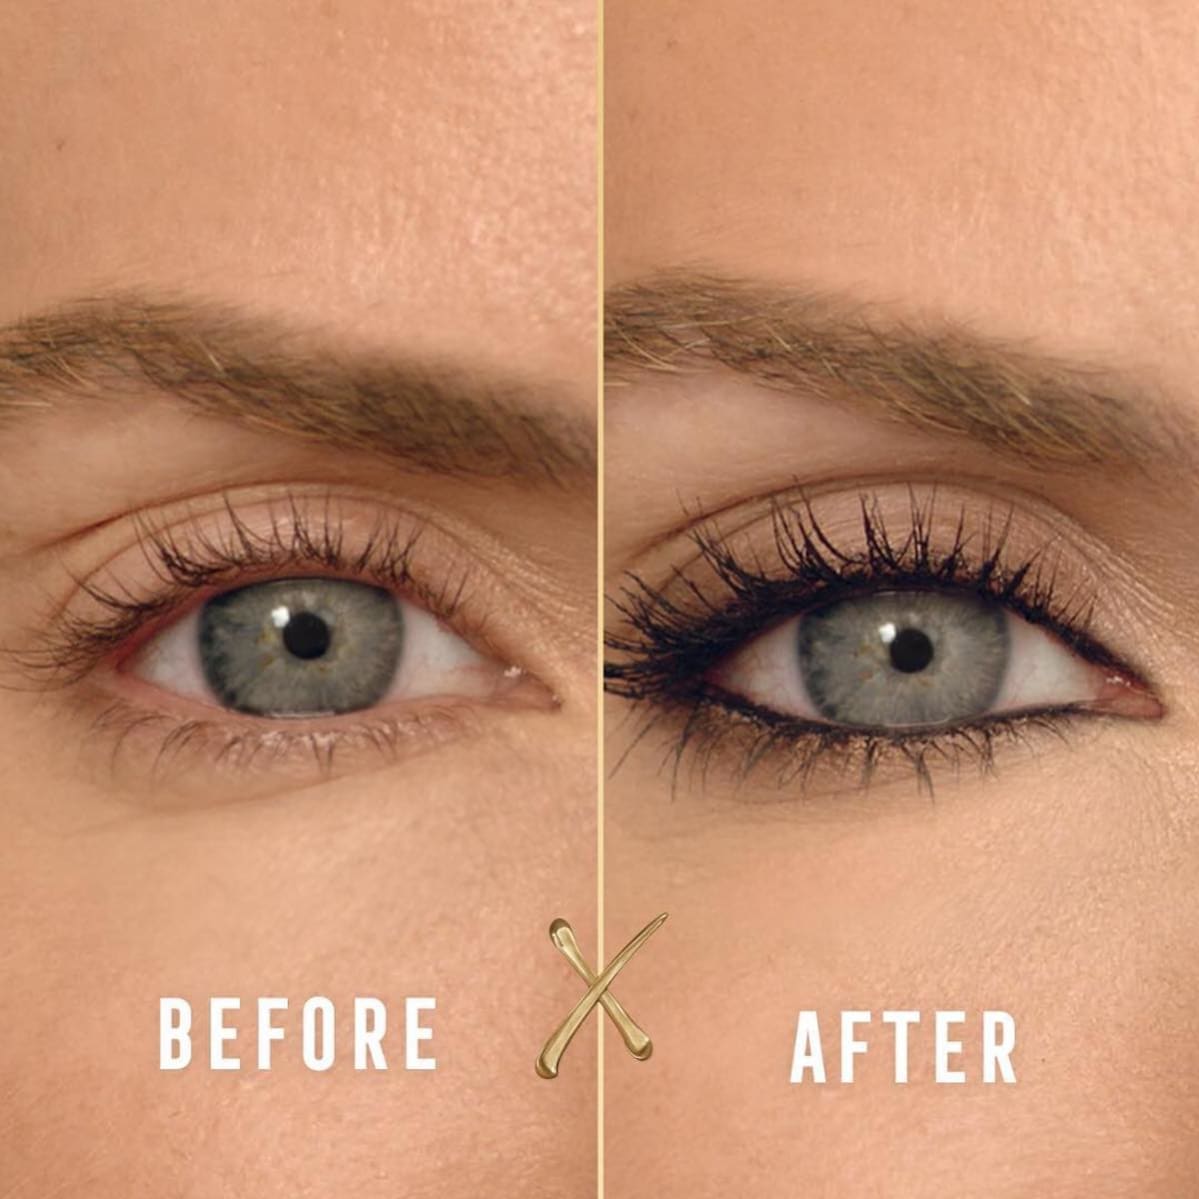 smokey eye makeup for blue eyes tutorial